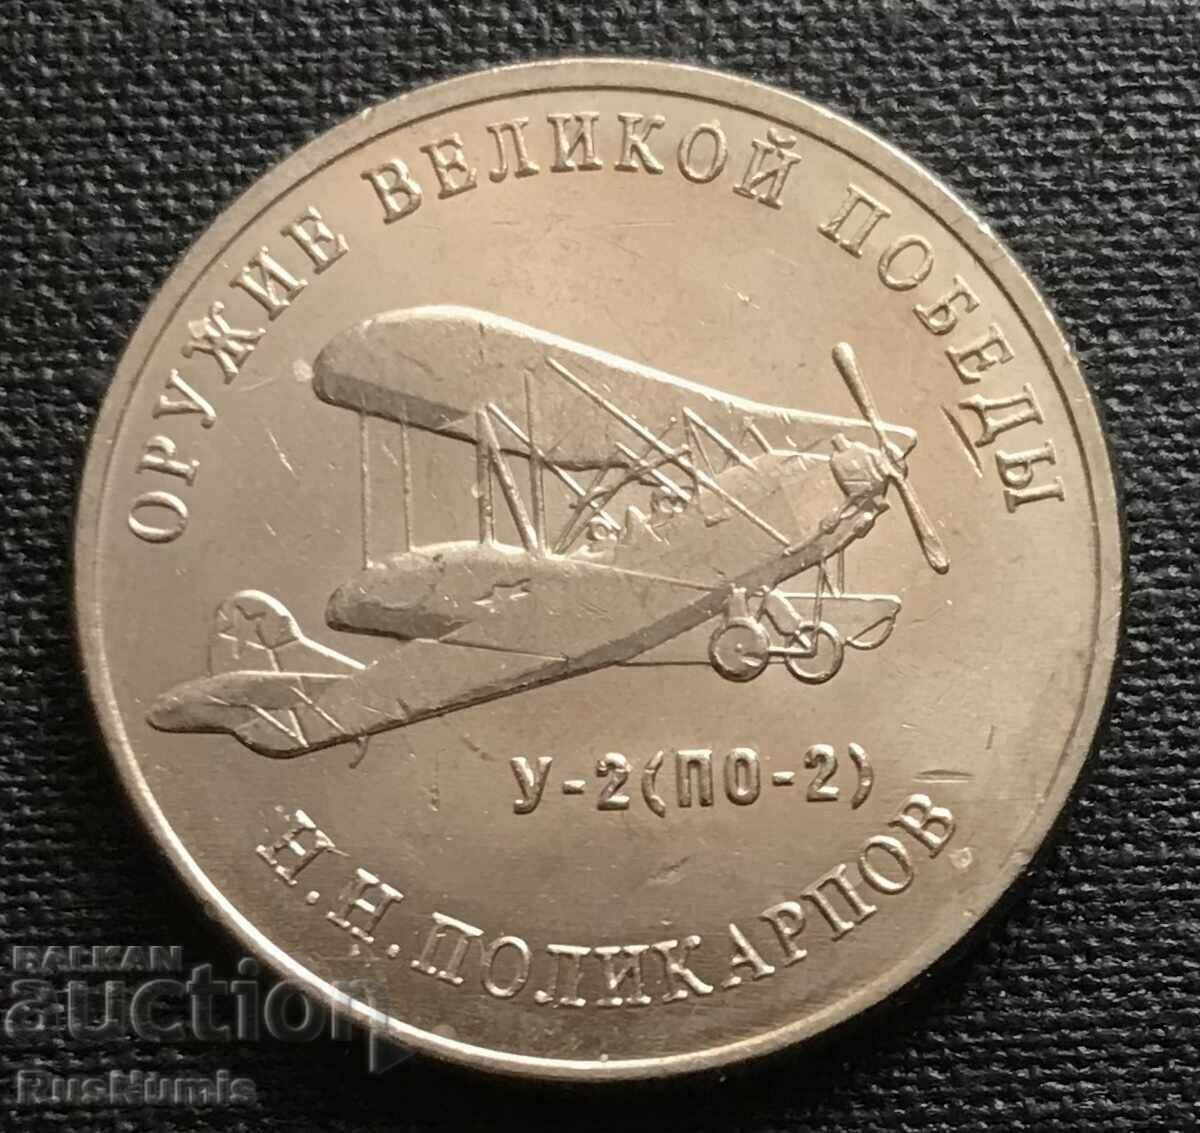 Russia. 25 rubles 2019 U-2.